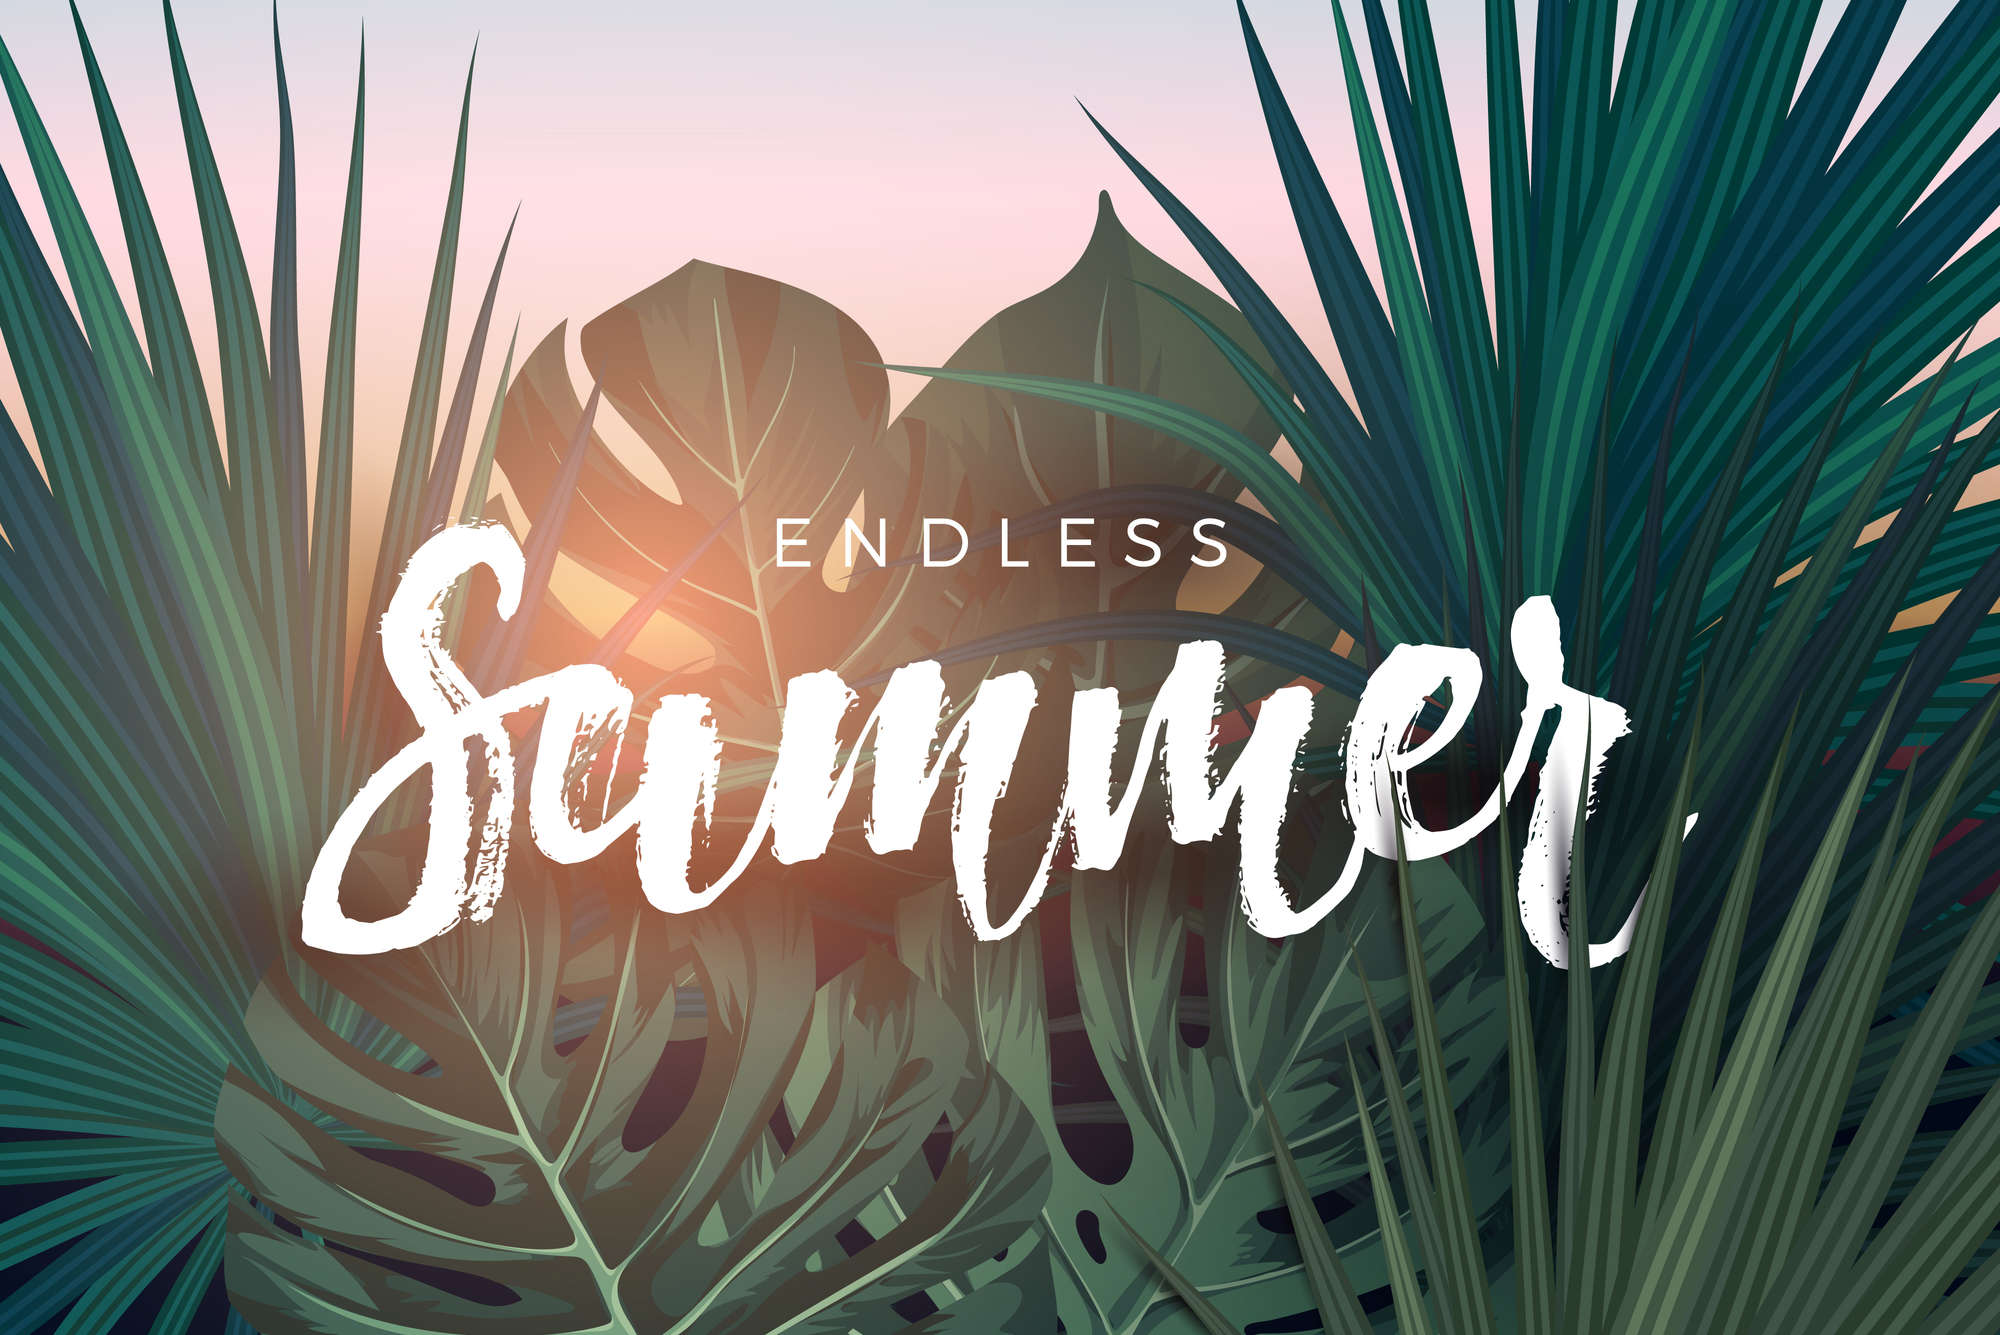             Grafik Fototapete "Endless Summer" Schriftzug auf Matt Glattvlies
        